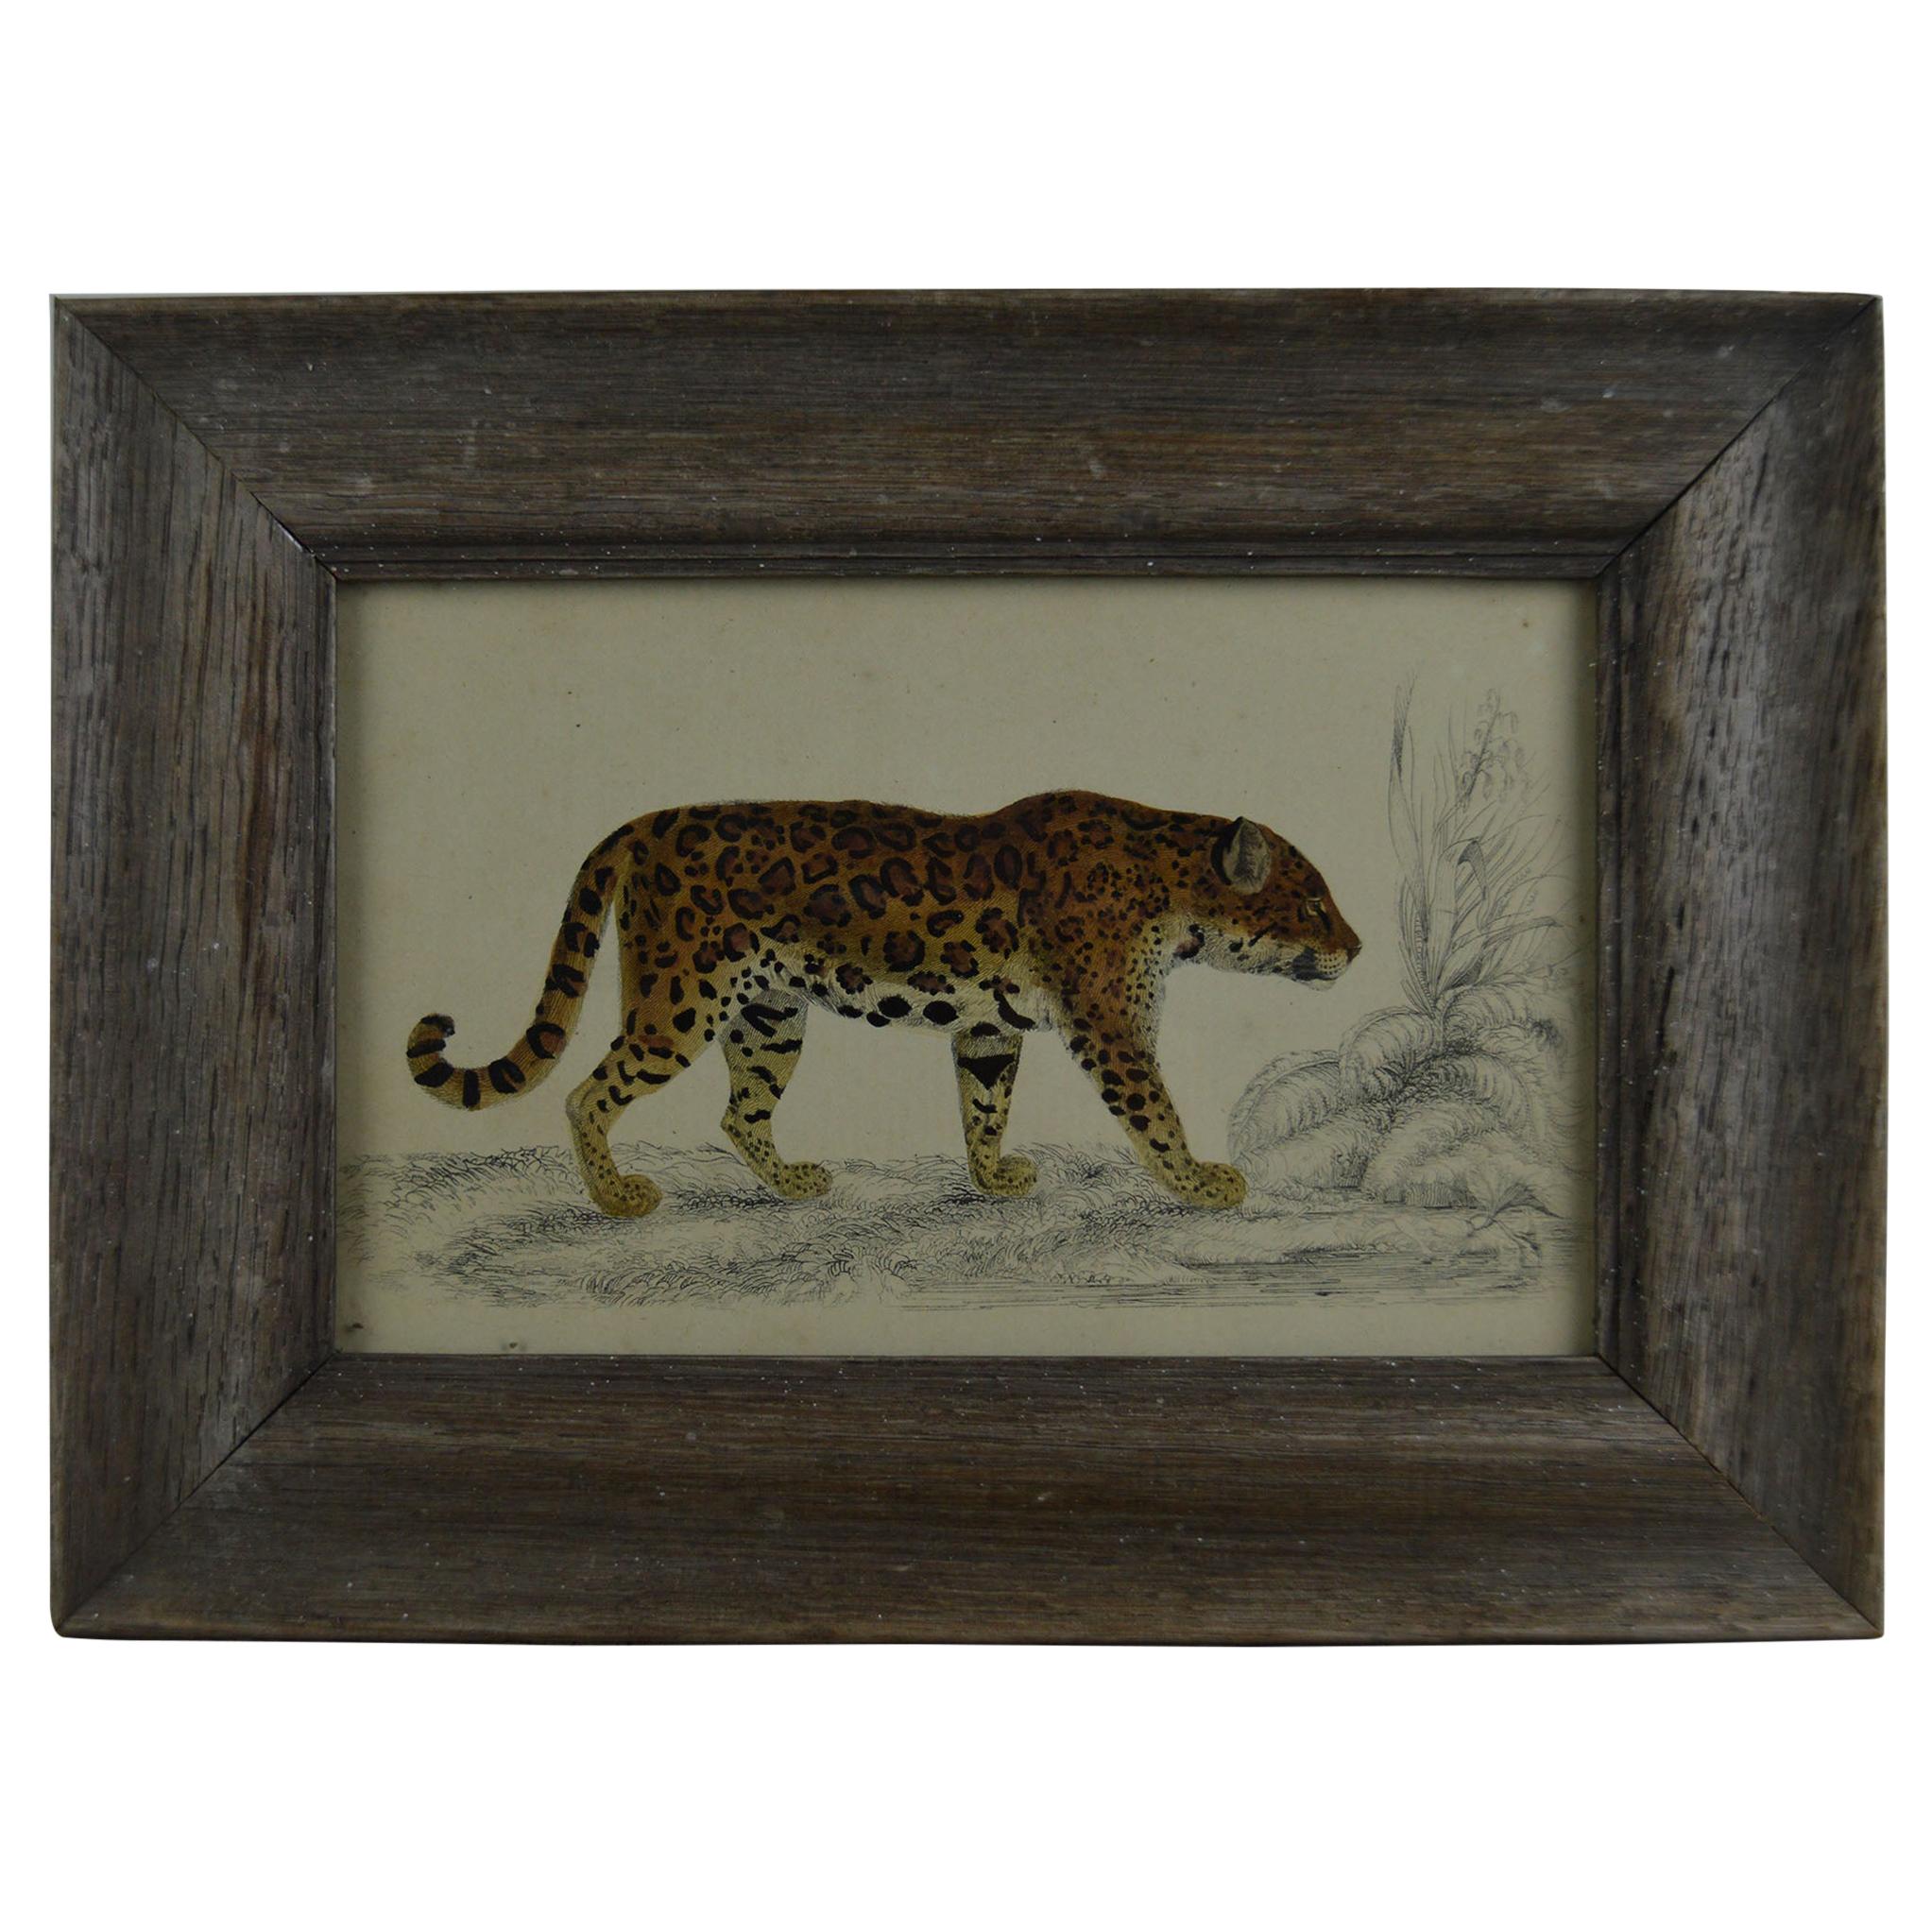 Original Antique Print of a Jaguar, 1847